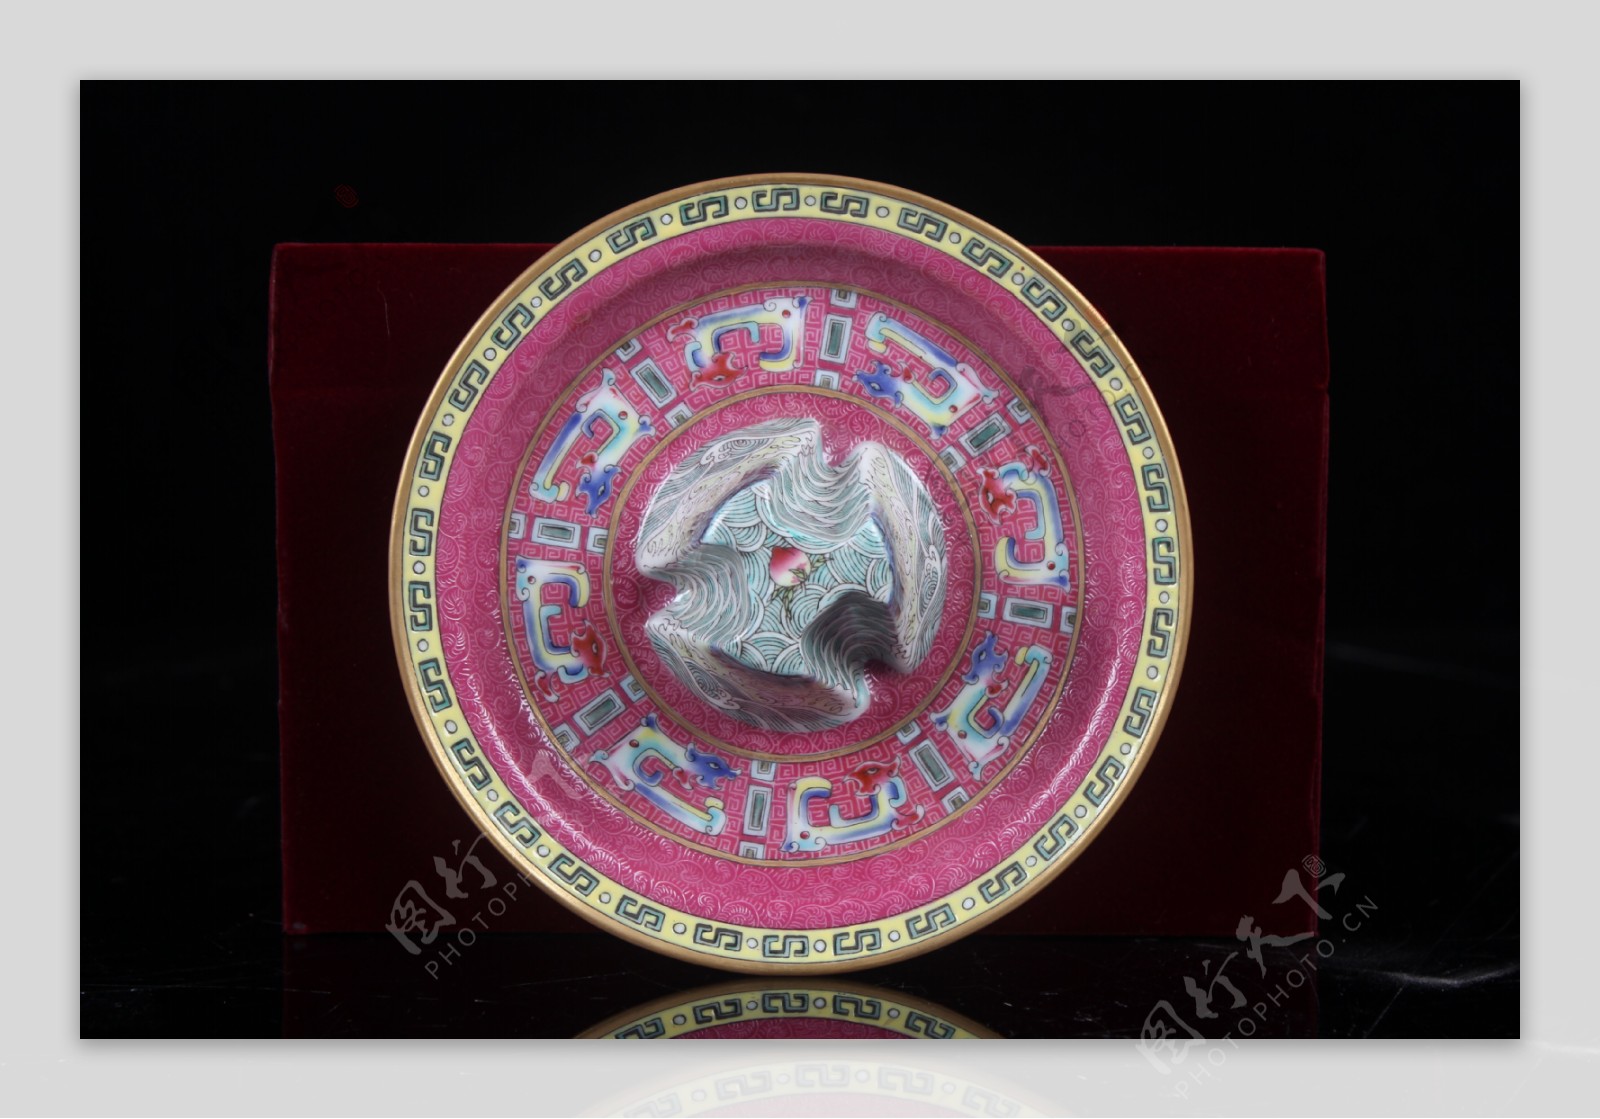 粉彩玛瑙红地绘古铜纹茶杯托盘